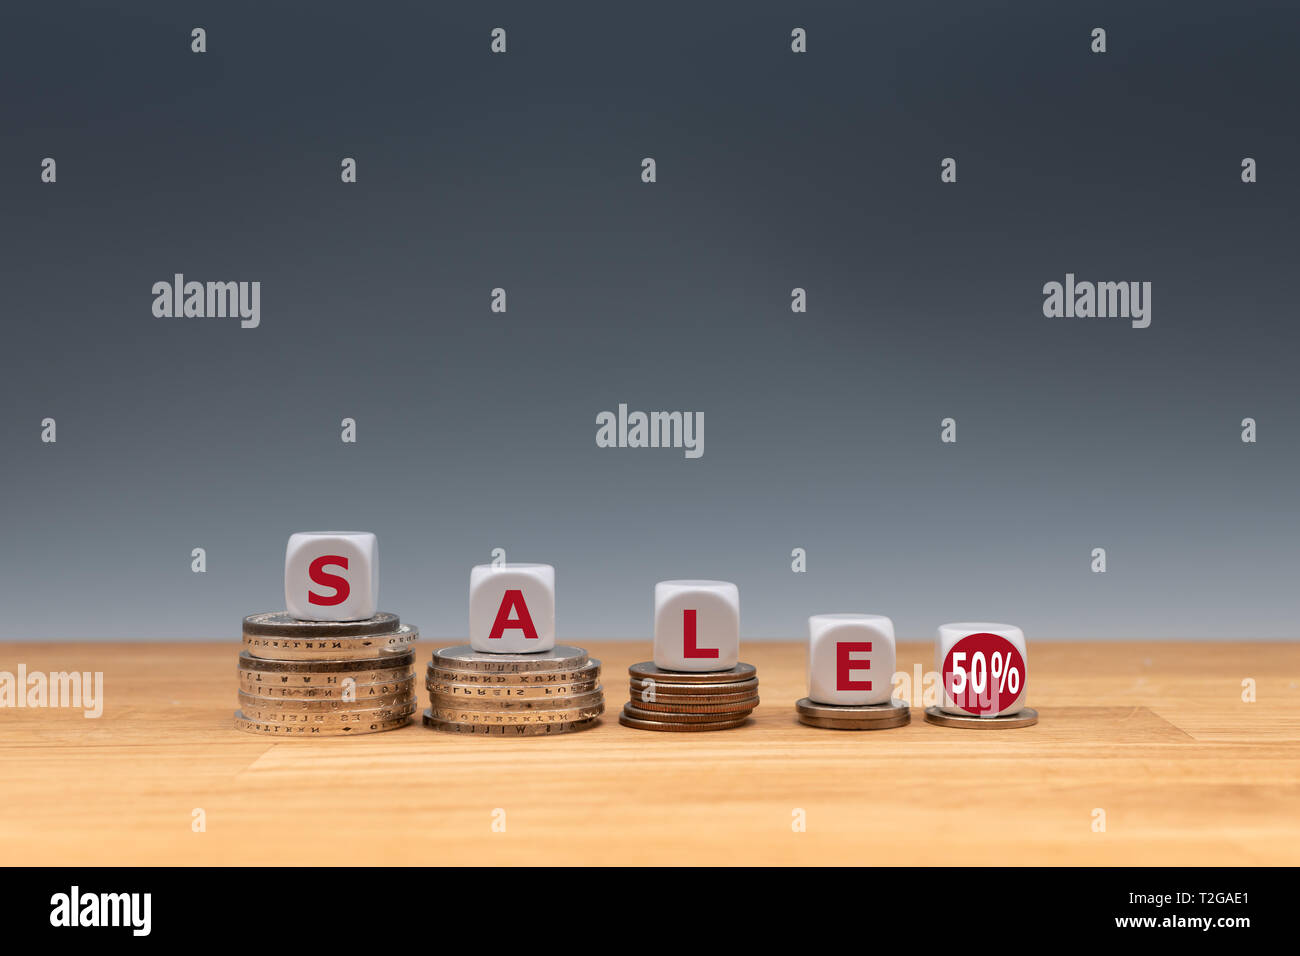 Simbolo per una vendita con un 50 % di sconto. Dadi posti sulle monete formano l'espressione 'sale 50%'. Foto Stock